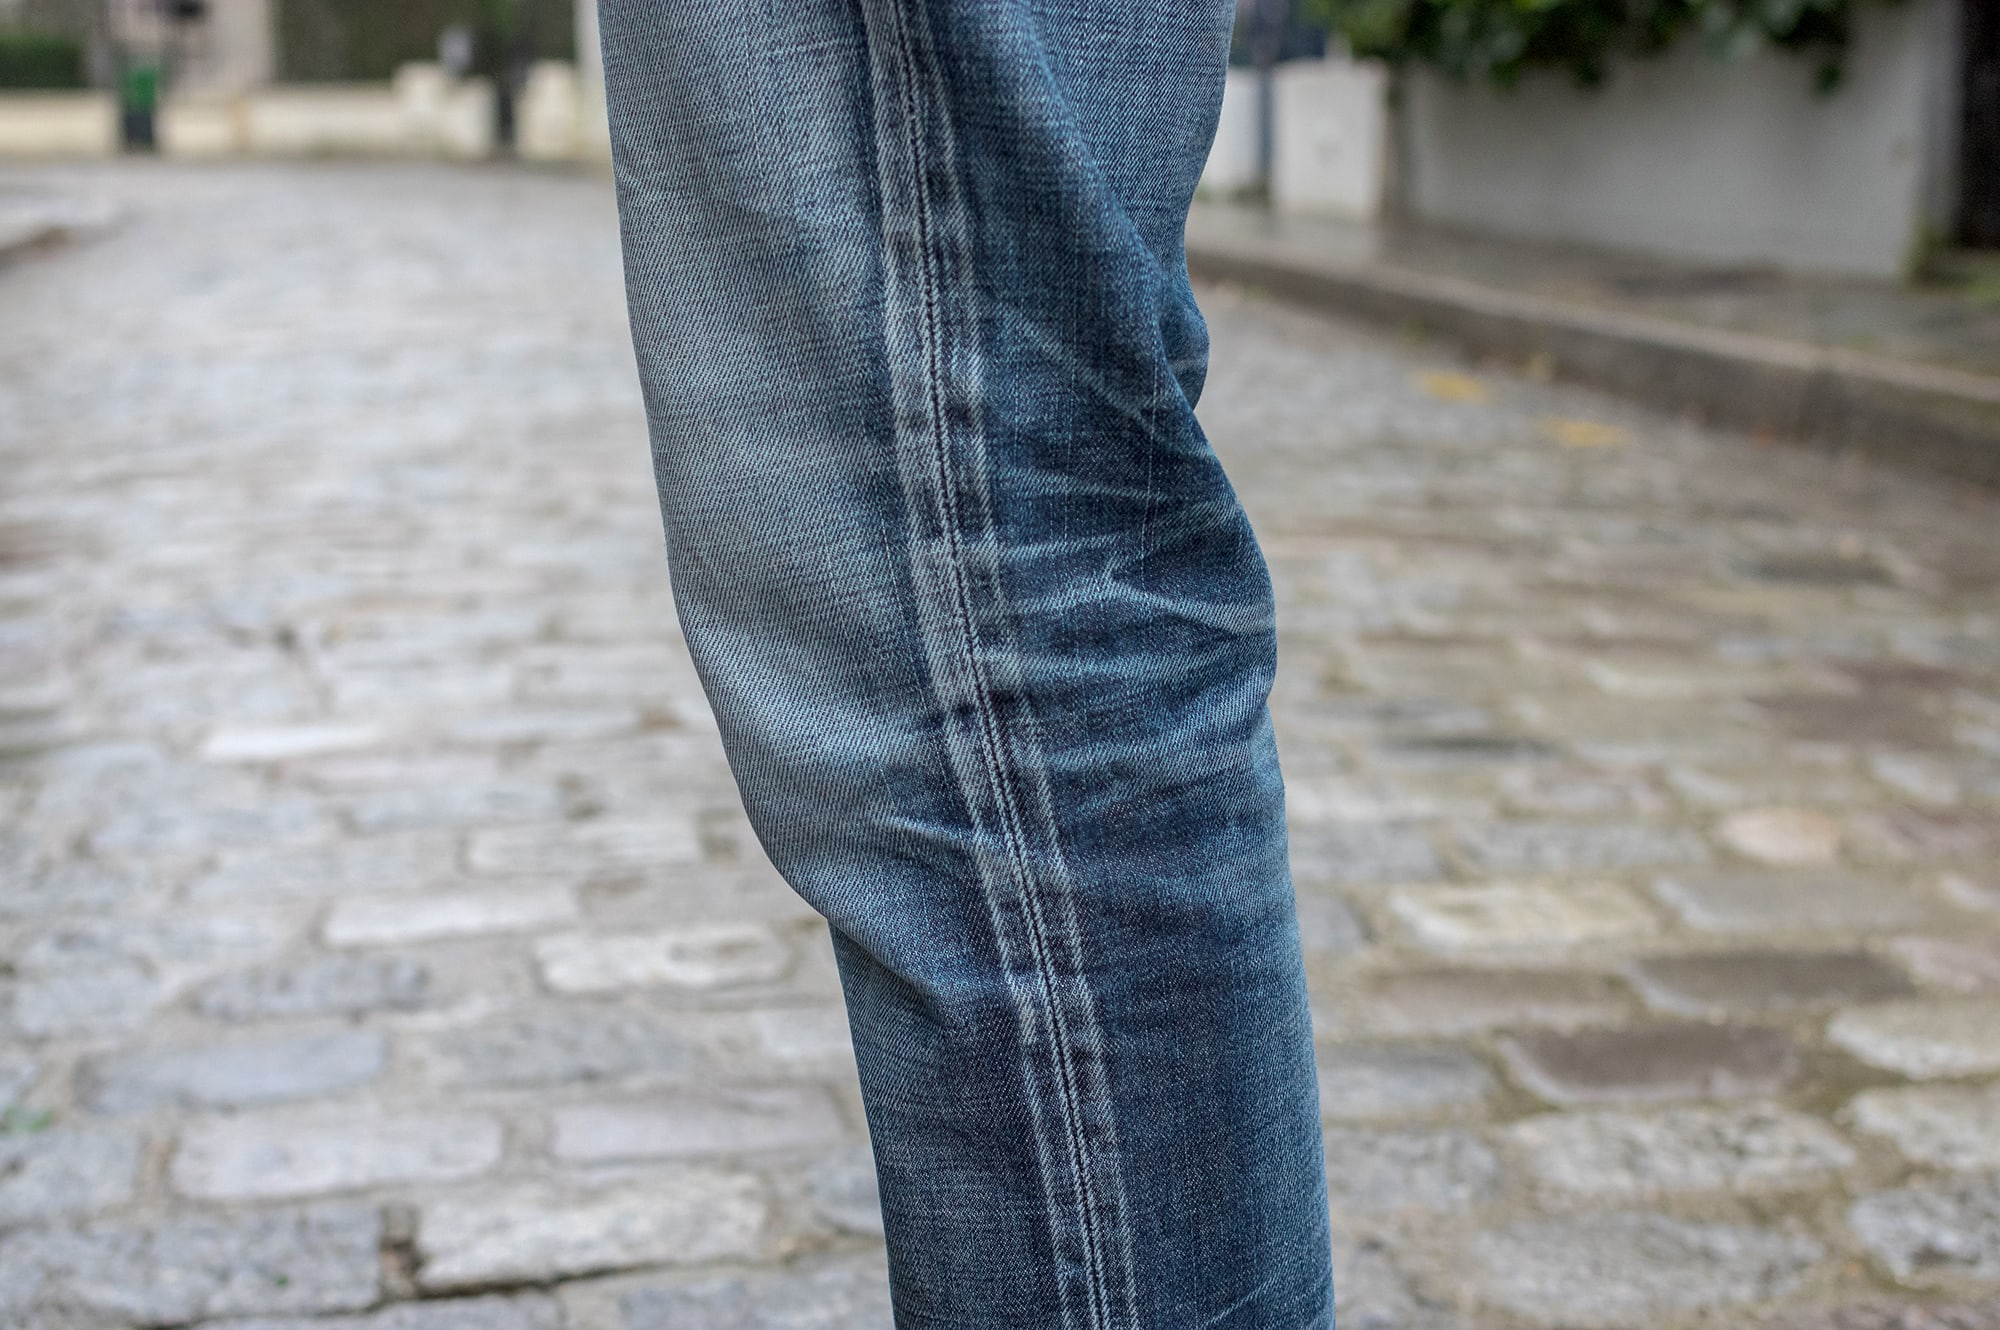 exemple de jean brut bien délavé avec patine - visvim fluxus denim 03 NW python patch 